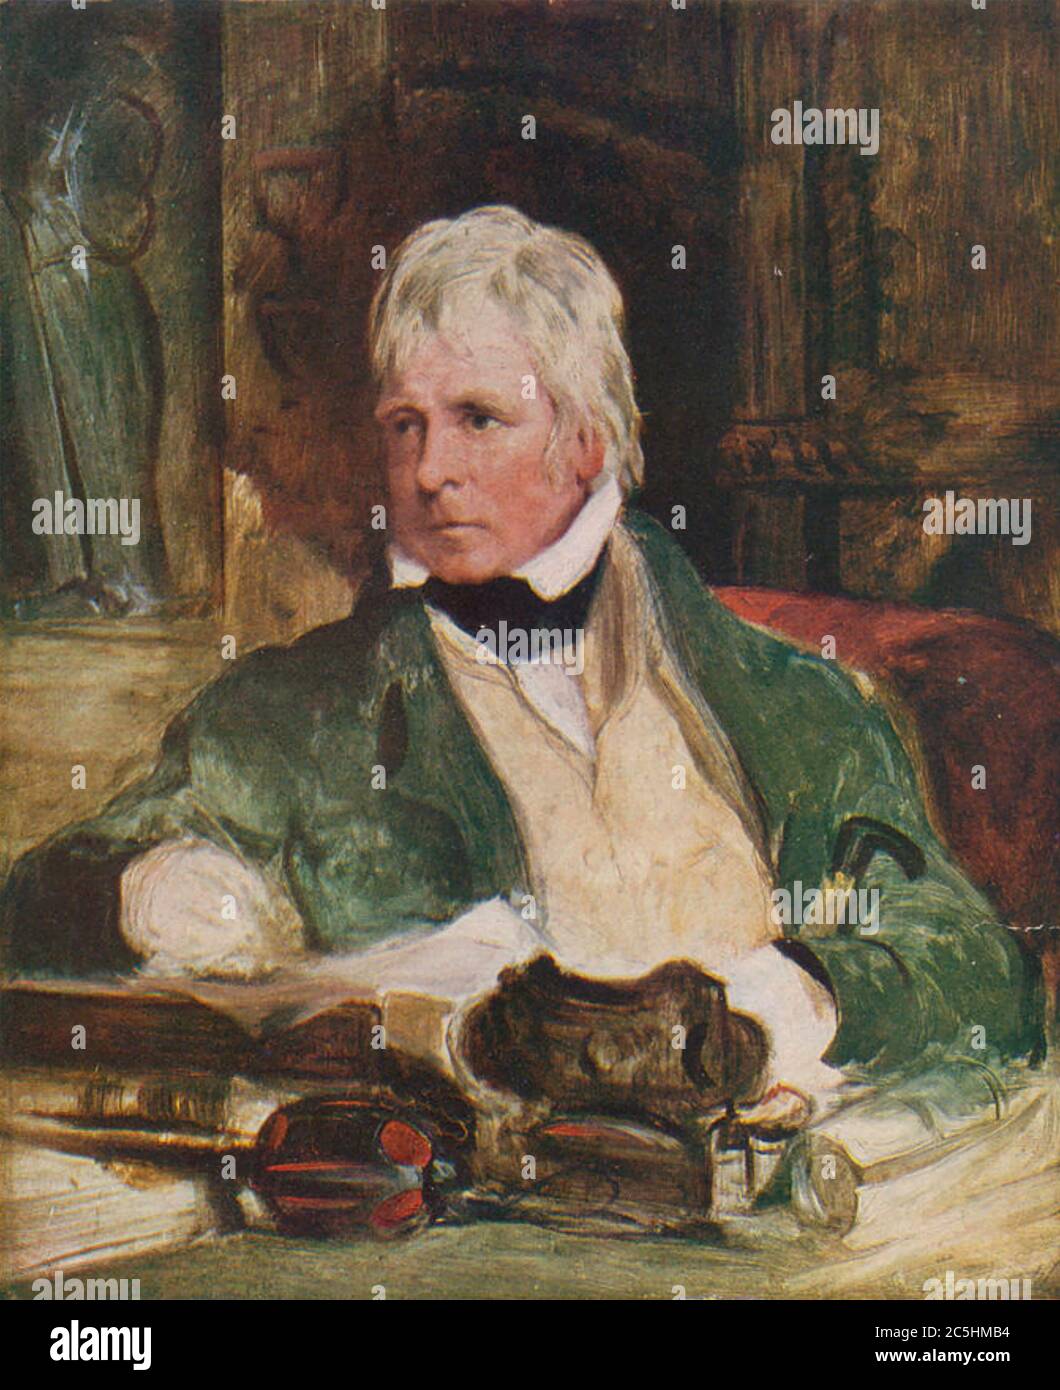 WALTER SCOTT (1771-1832) romancier historique écossais Banque D'Images